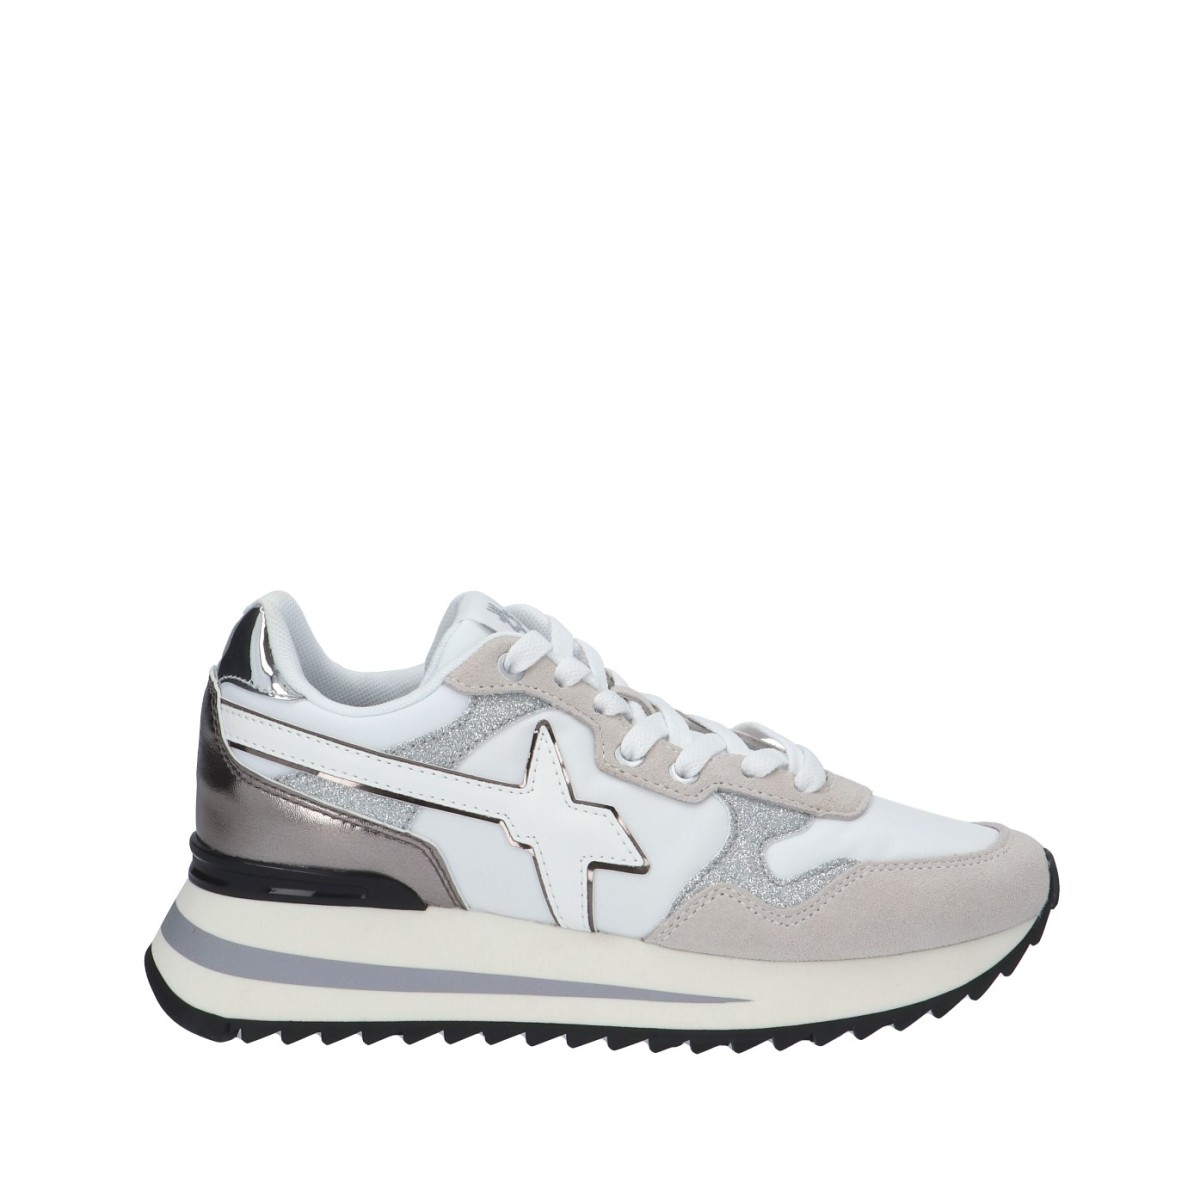 W6yz Sneaker Bianco/argento Gomma YAK